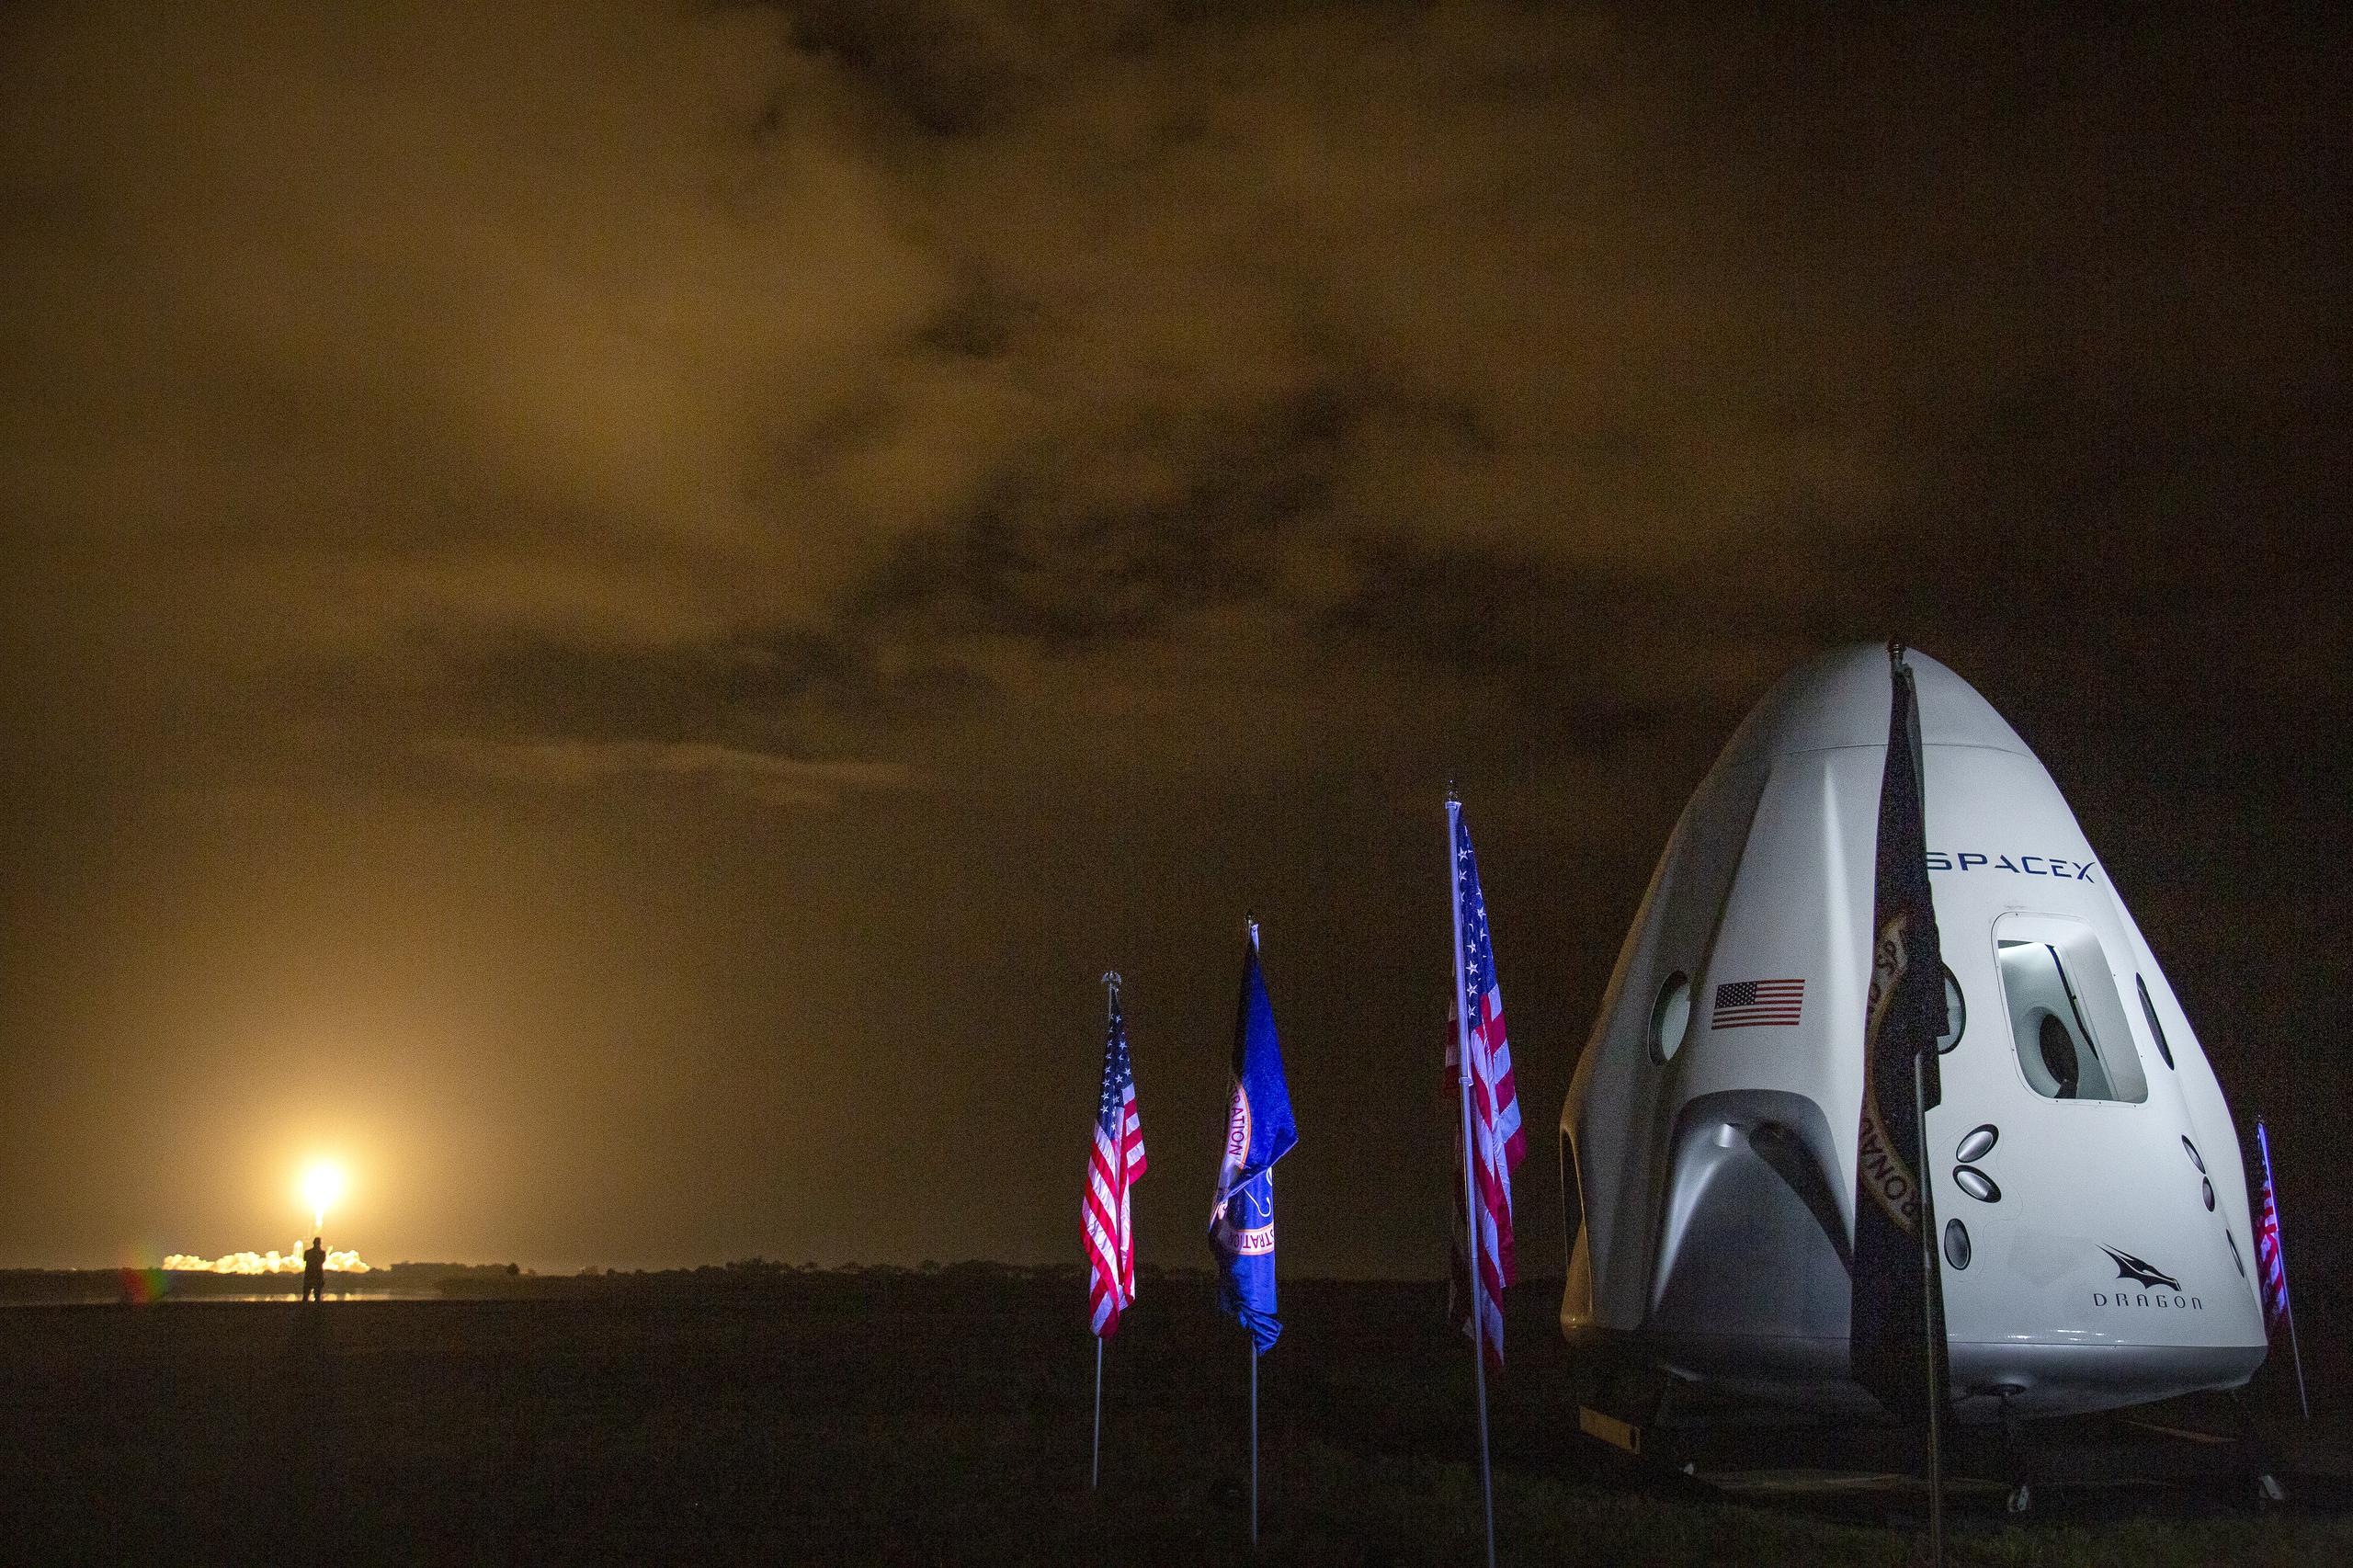 Imagen de archivo del despegue de la Misión SpaceX Crew-3 en un cohete Falcon 9 en el Centro Espacial Kennedy, Florida, Estados Unidos. EFE/EPA/CRISTOBAL HERRERA-ULASHKEVICH
